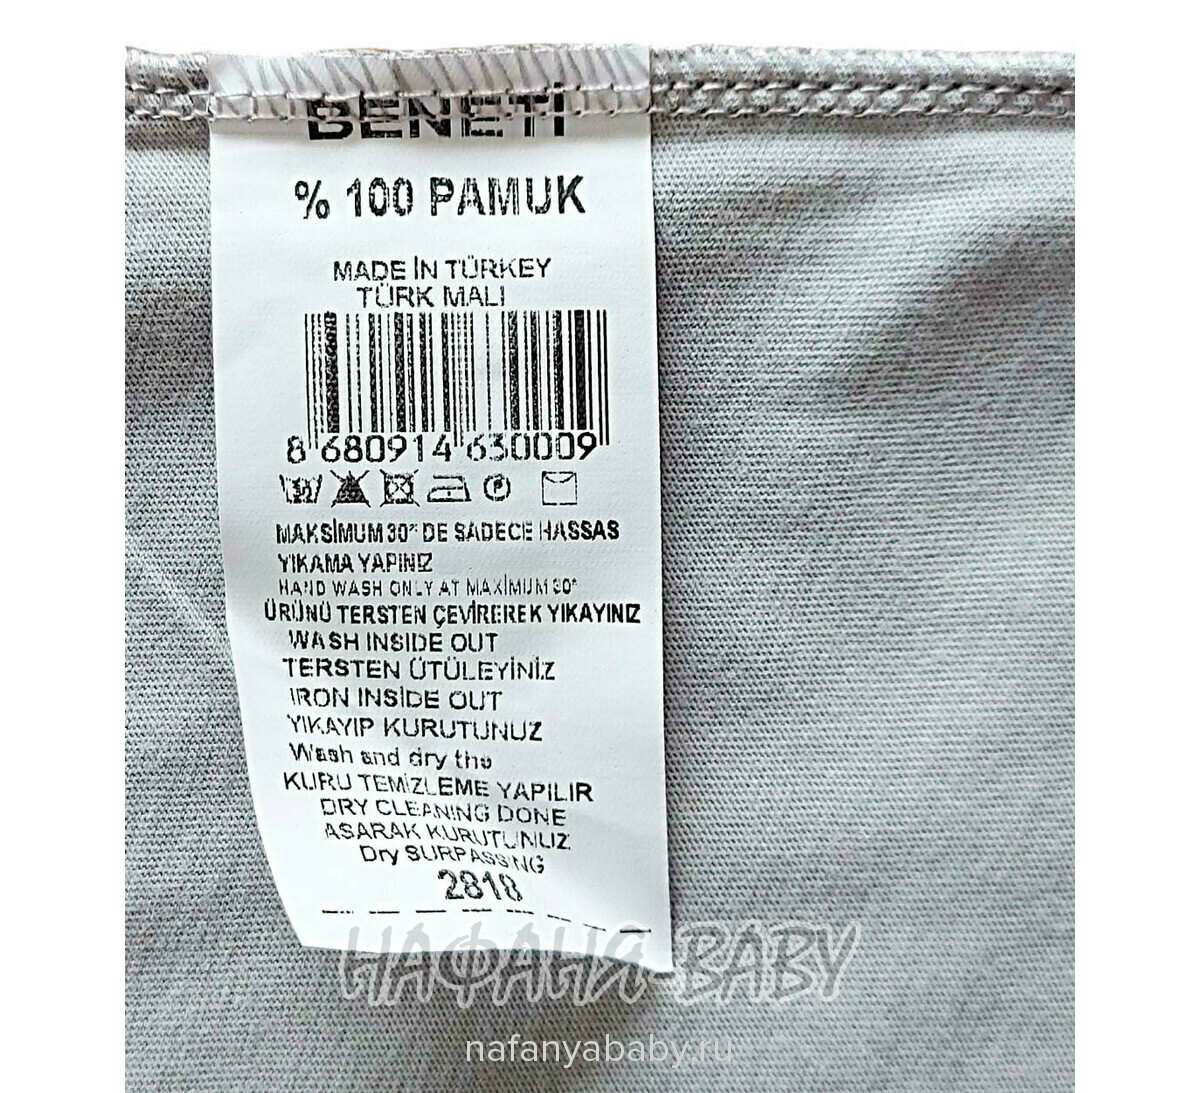 Детская футболка BENETI арт: 2818, 5-9 лет, цвет серый, оптом Турция